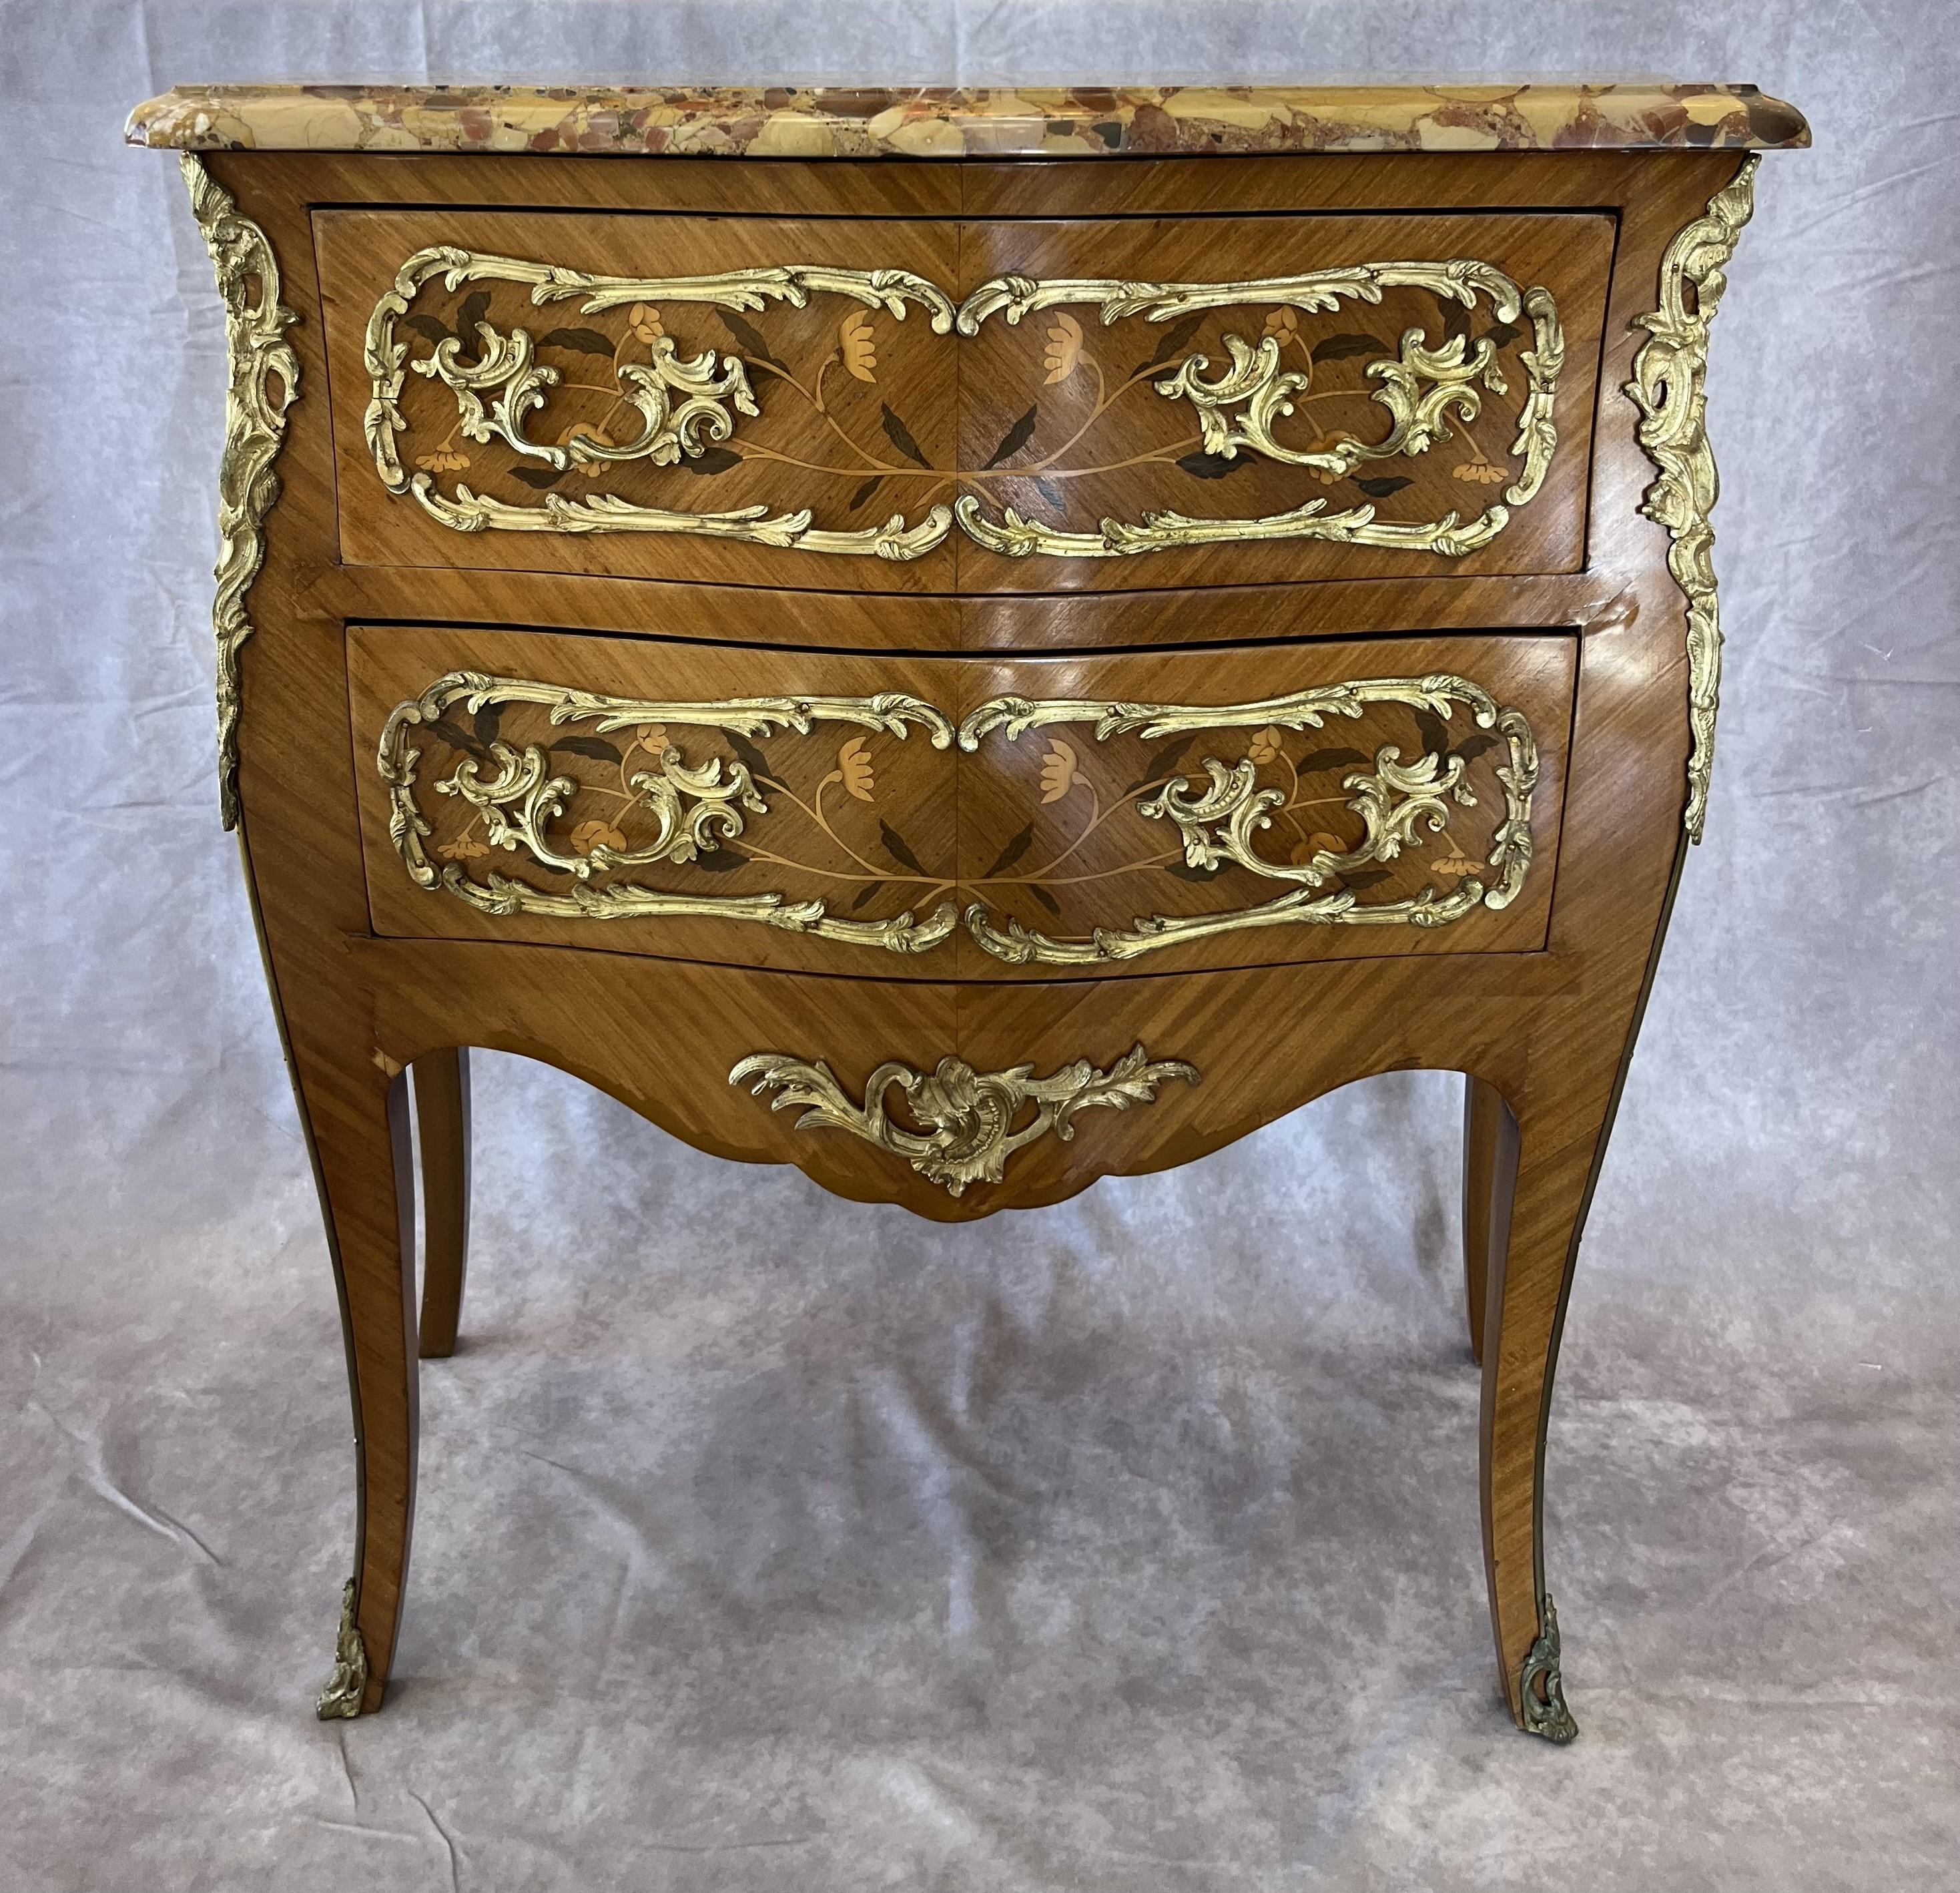 Commode de style Louis XV à tiroirs estampillée Sormani sur le bois, marqueterie florale et bronze doré monté avec le marbre tacheté d'origine.